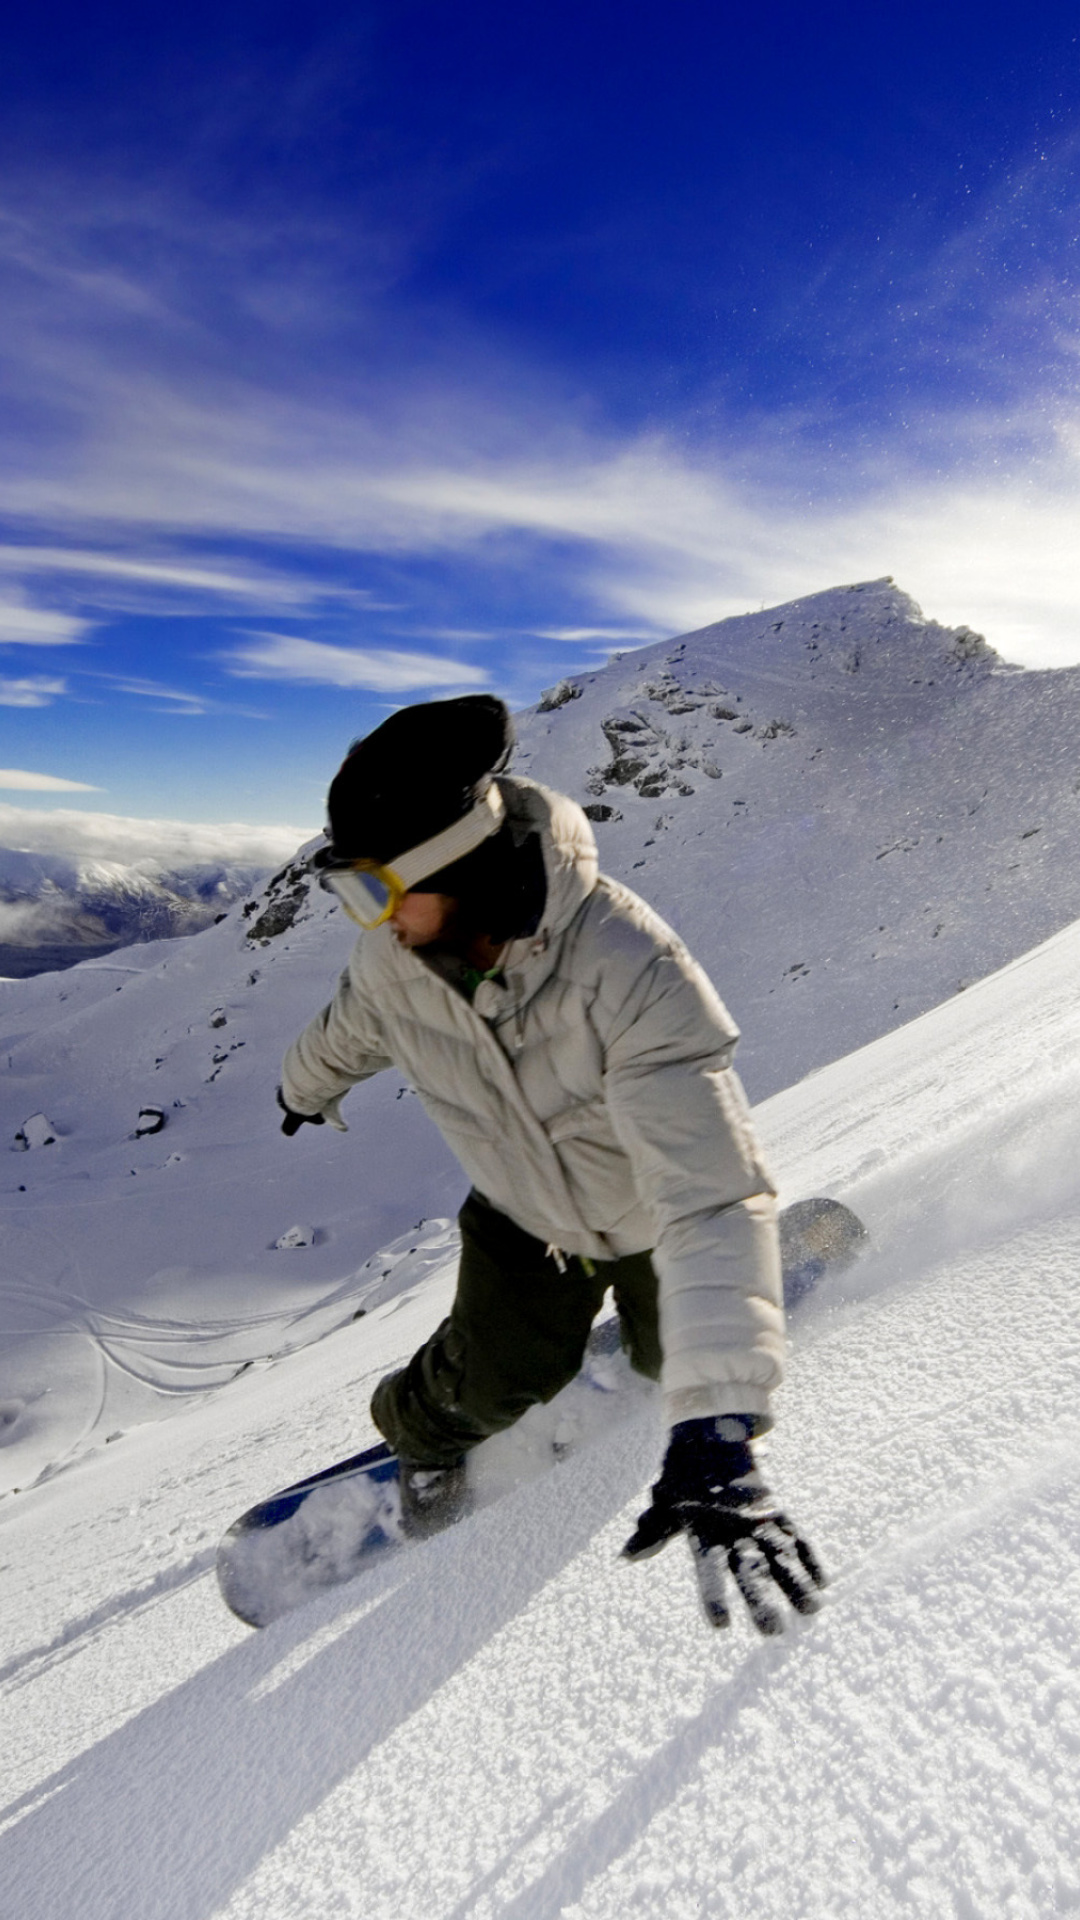 Outdoor activities as Snowboarding screenshot #1 1080x1920